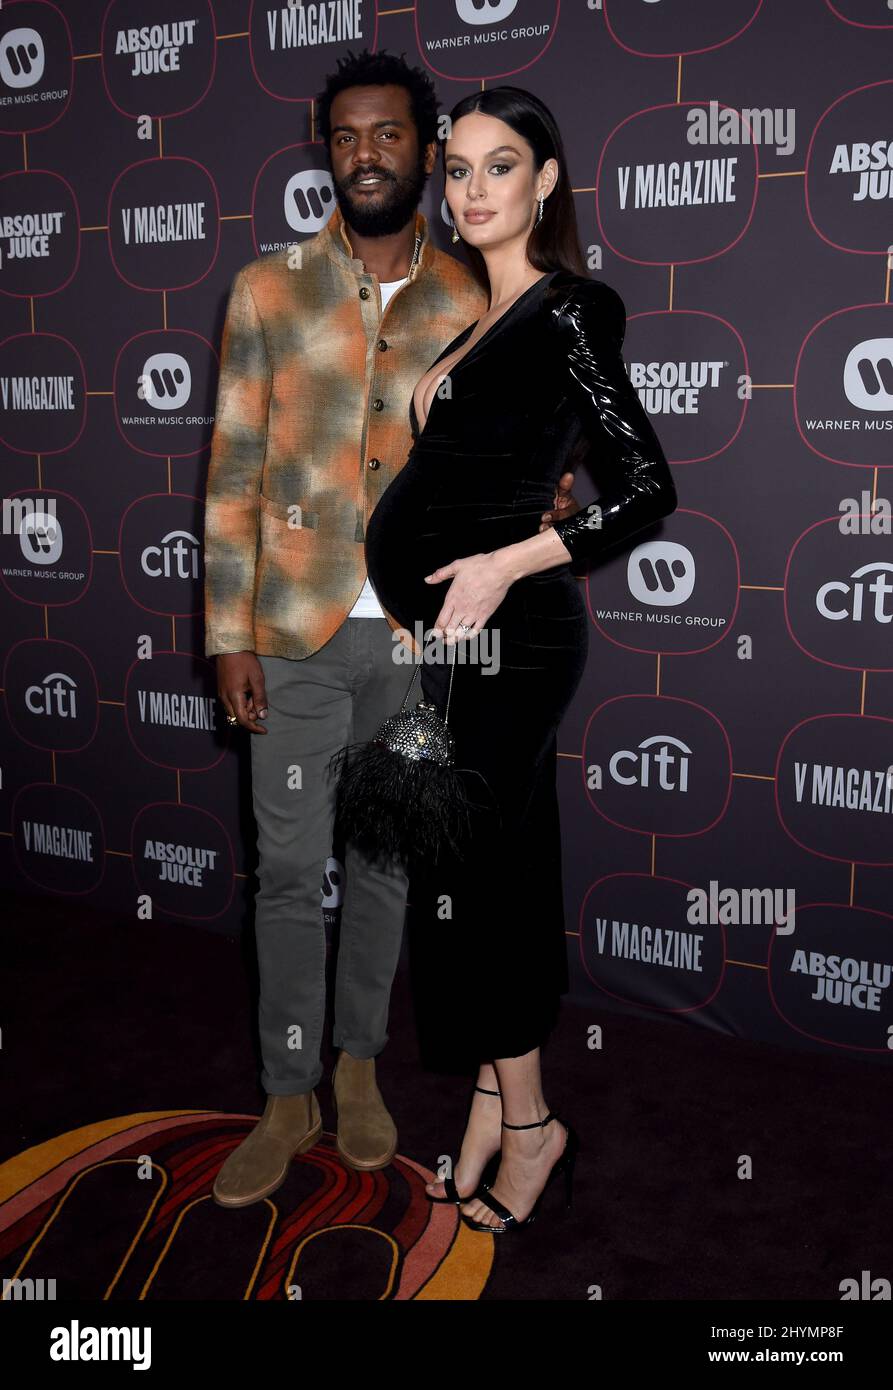 Gary Clark Jr. E Nicole Trunfio al Warner Music Group Pre-Grammy Party tenutosi presso l'Hollywood Athletic Club il 23 gennaio 2020 a Hollywood, Los Angeles. Foto Stock